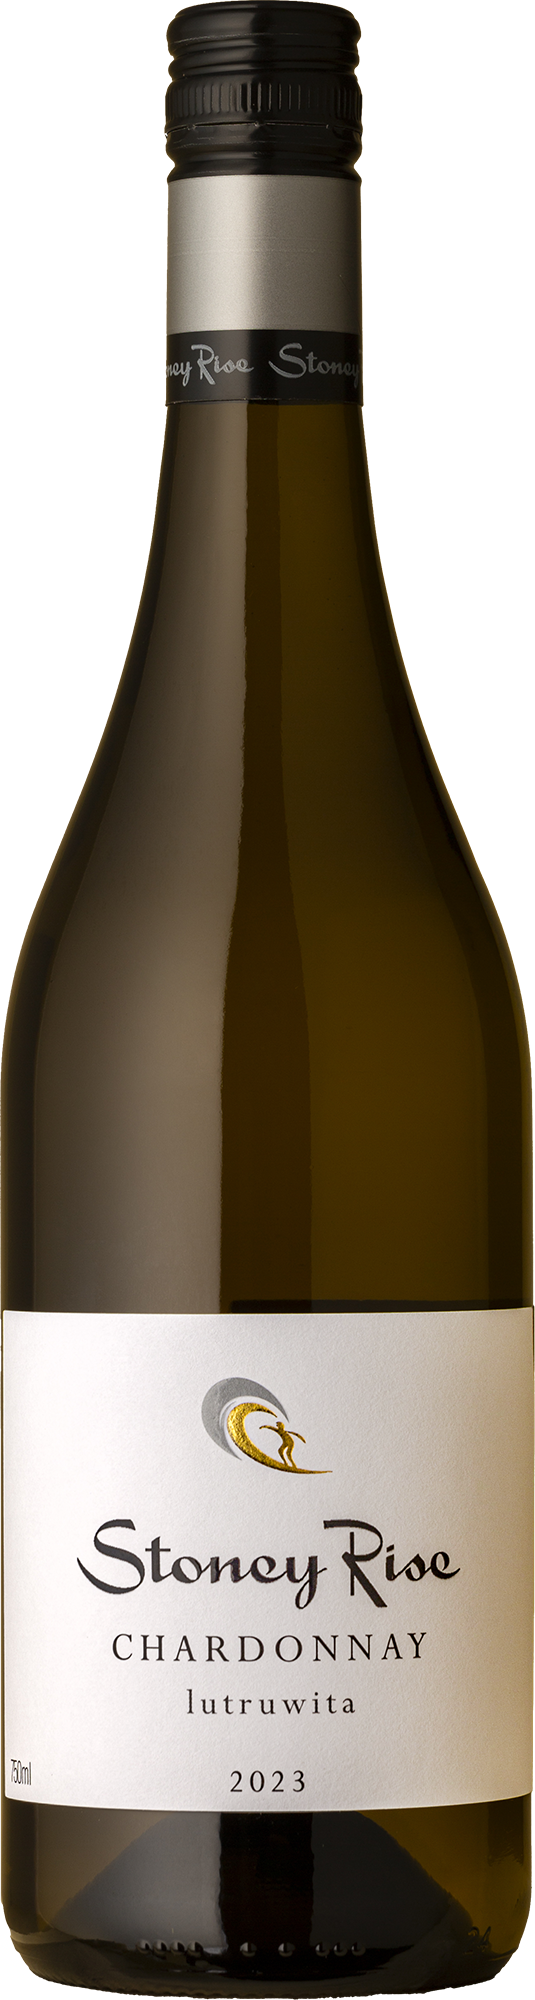 Stoney Rise - Chardonnay 2023 White Wine